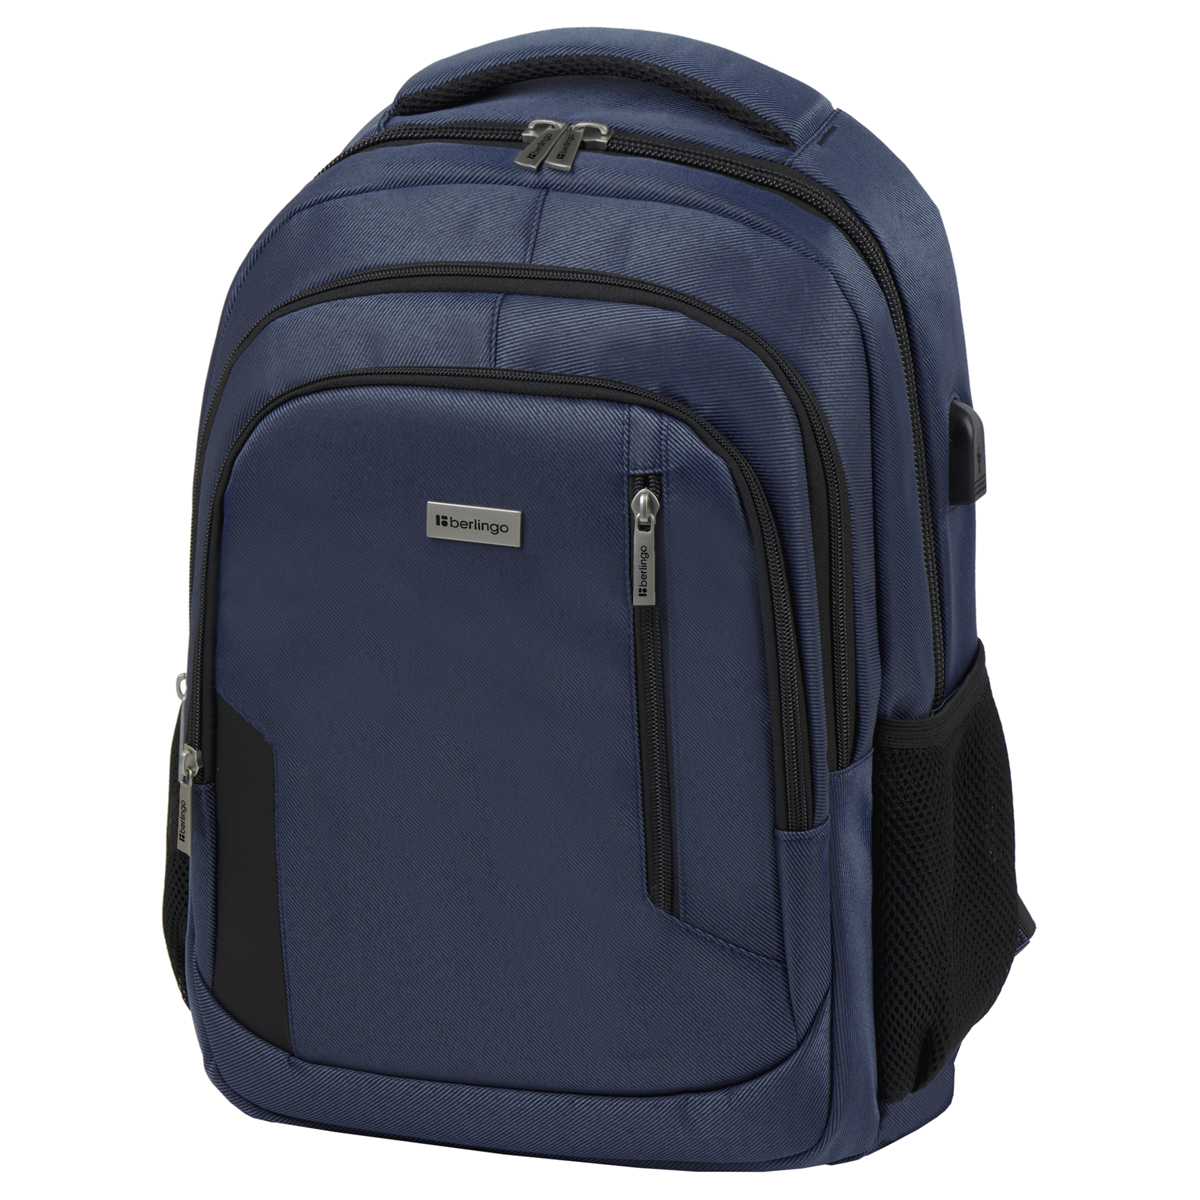 Рюкзак Berlingo City Comfort blue 42*29*17см, 3 отделения, 3 кармана, отделение для ноутбука, USB  (Вид 1)